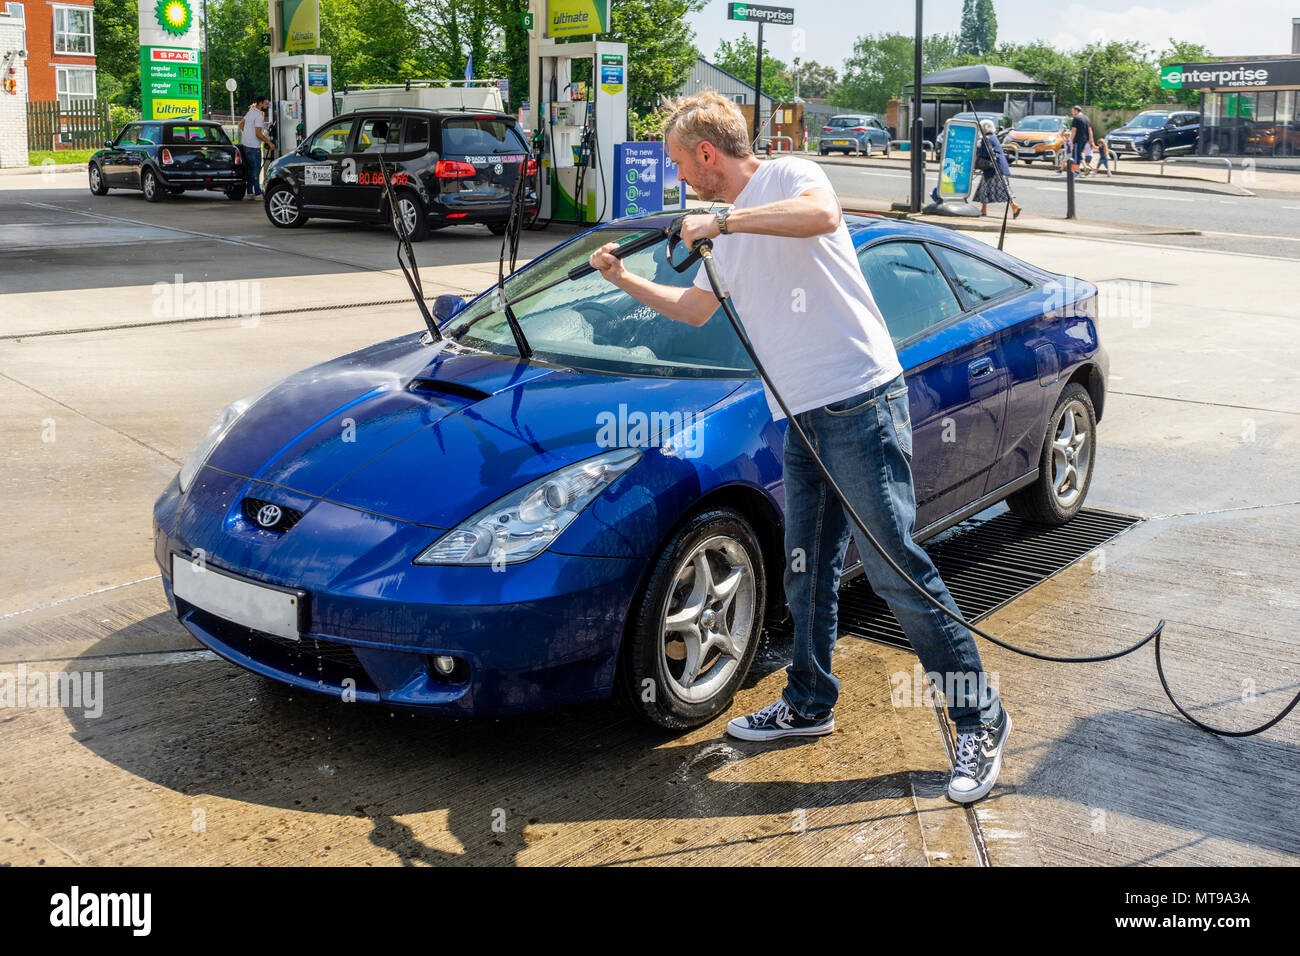 Männlich (Alter 30-40 Jahre) über eine Düse Hochdruckreiniger waschen einen blauen Toyata Celica Auto an einer Tankstelle in Großbritannien, Europa zu reinigen Stockfoto